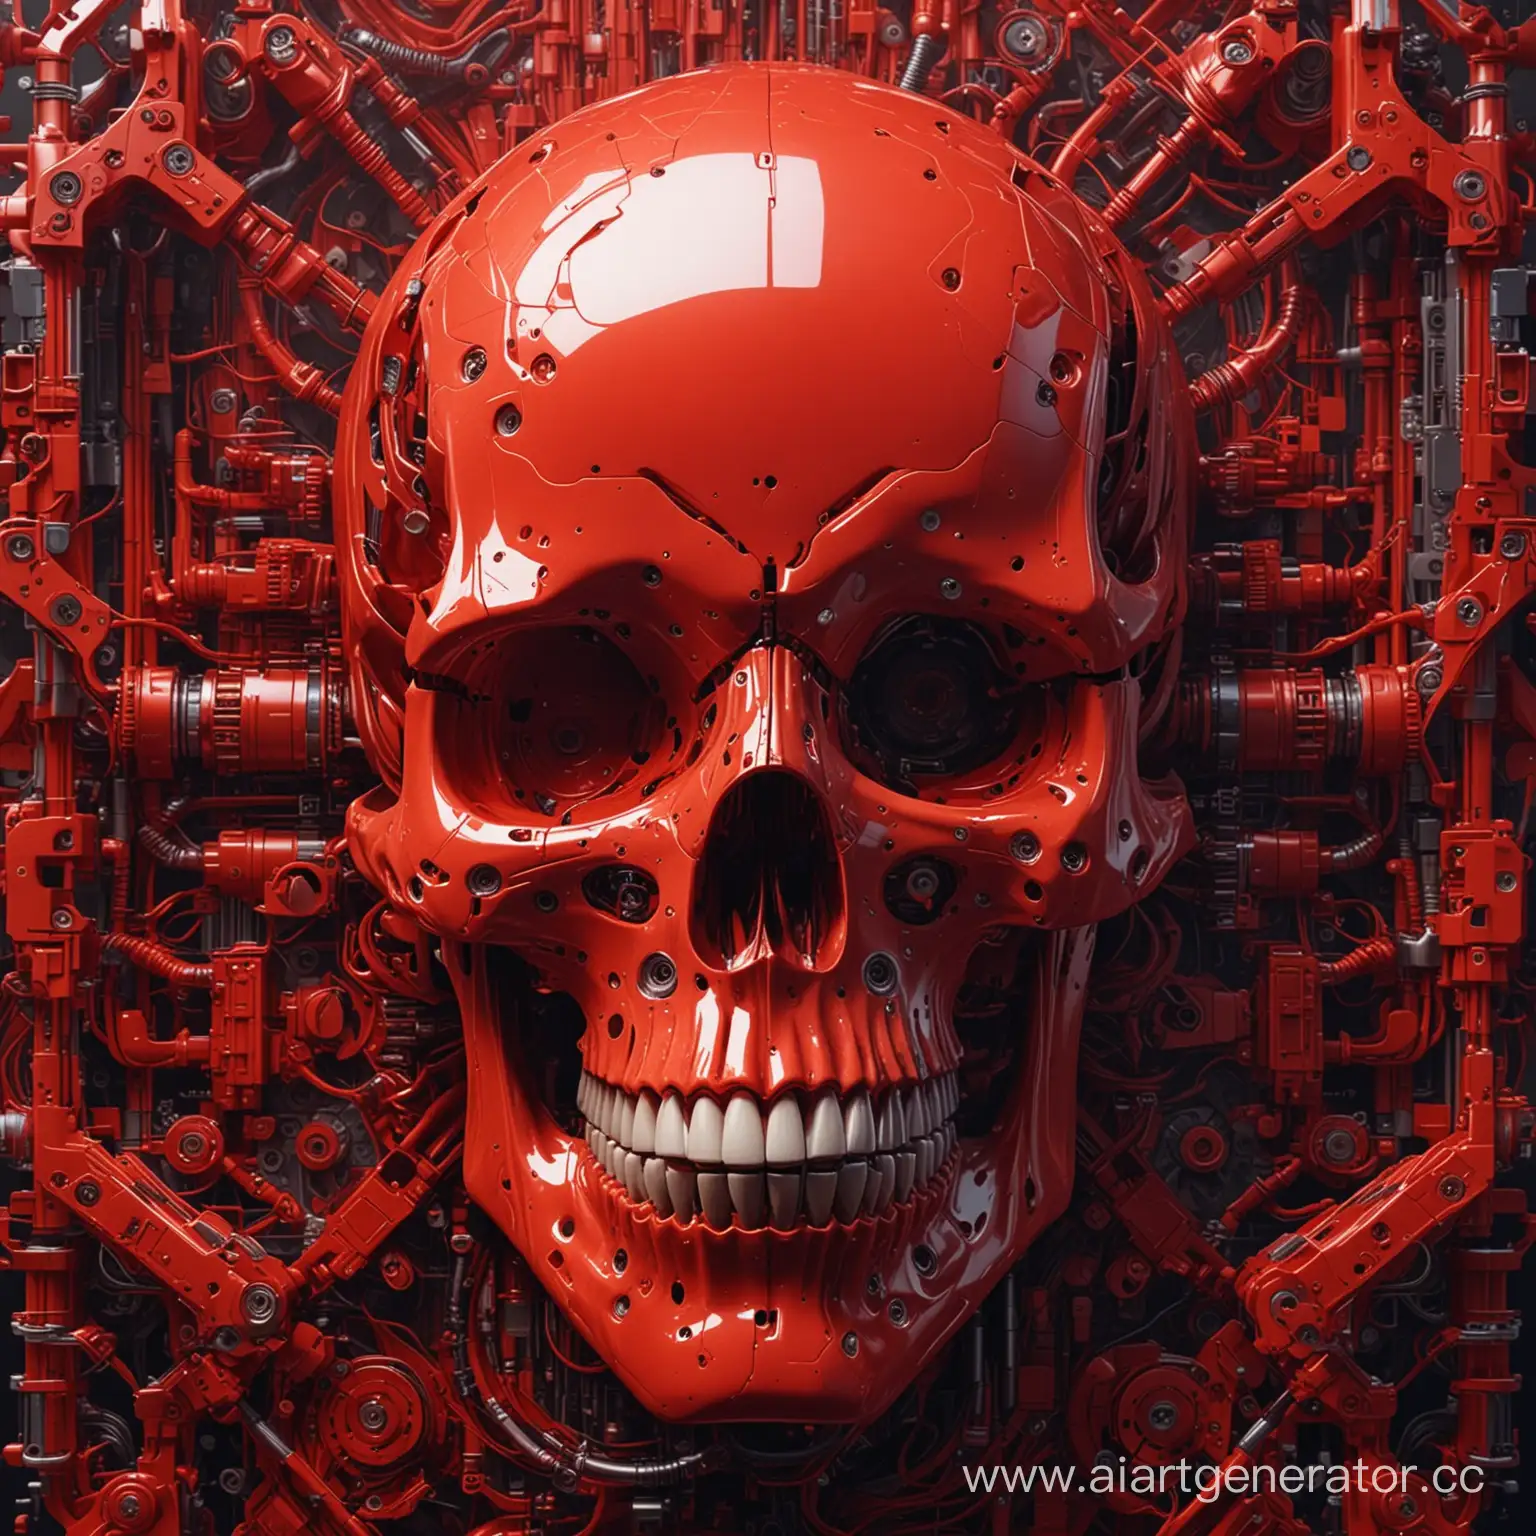 абстракция, роботический череп, всё в красных тонах, дизайн будущего, фотореалистичность